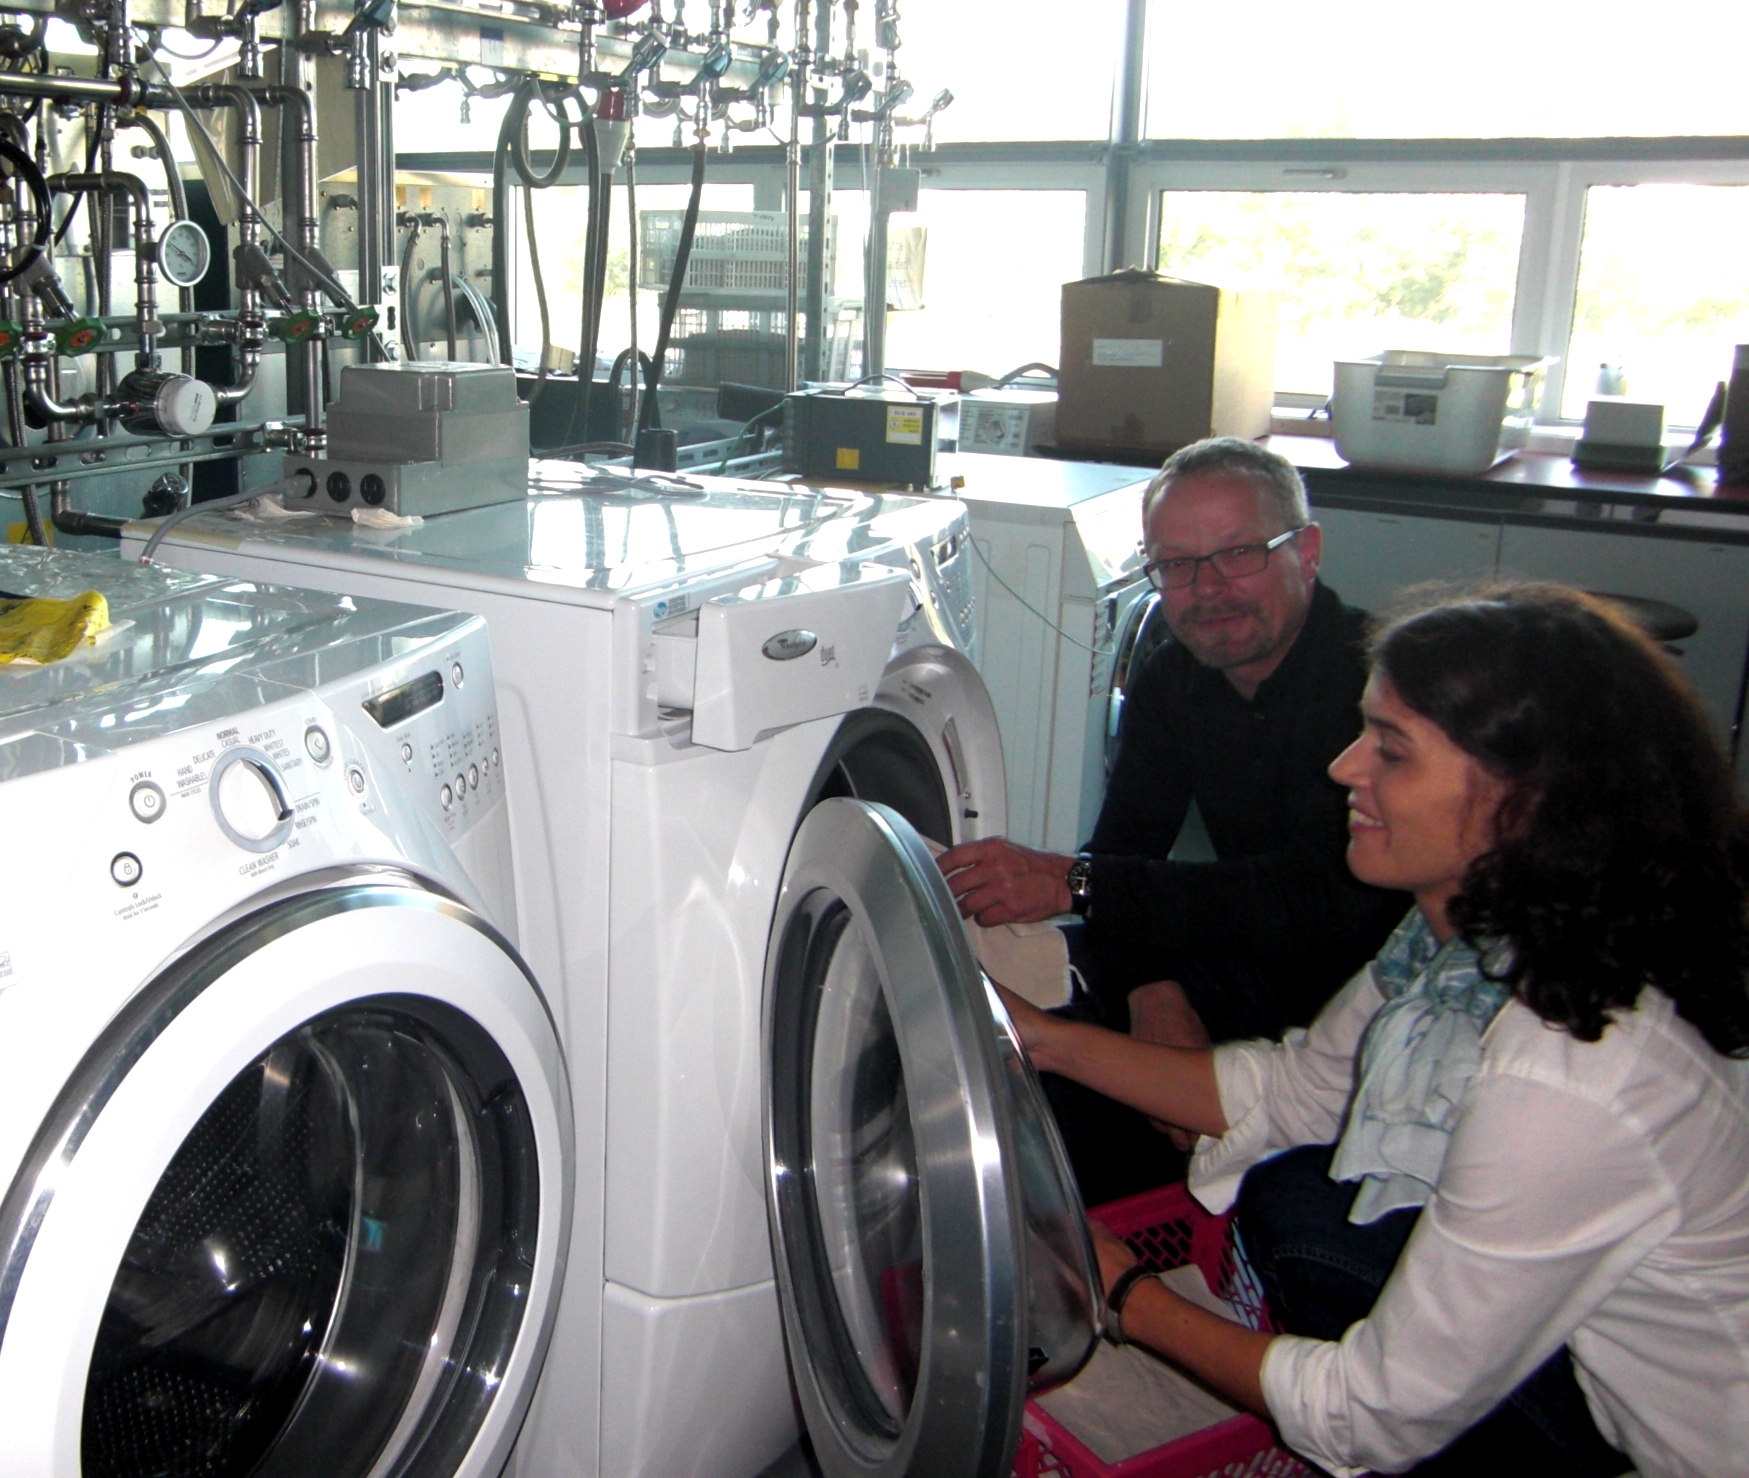 Daniel Fäh, Geschäftsführer der Empa Testmaterials AG, mit Caroline Amberg, Projektleiterin für Mikrobiologie des Unternehmens im Waschraum vor einer Waschmaschine hockend beim Beladen des Geräts mit Testgewebe.